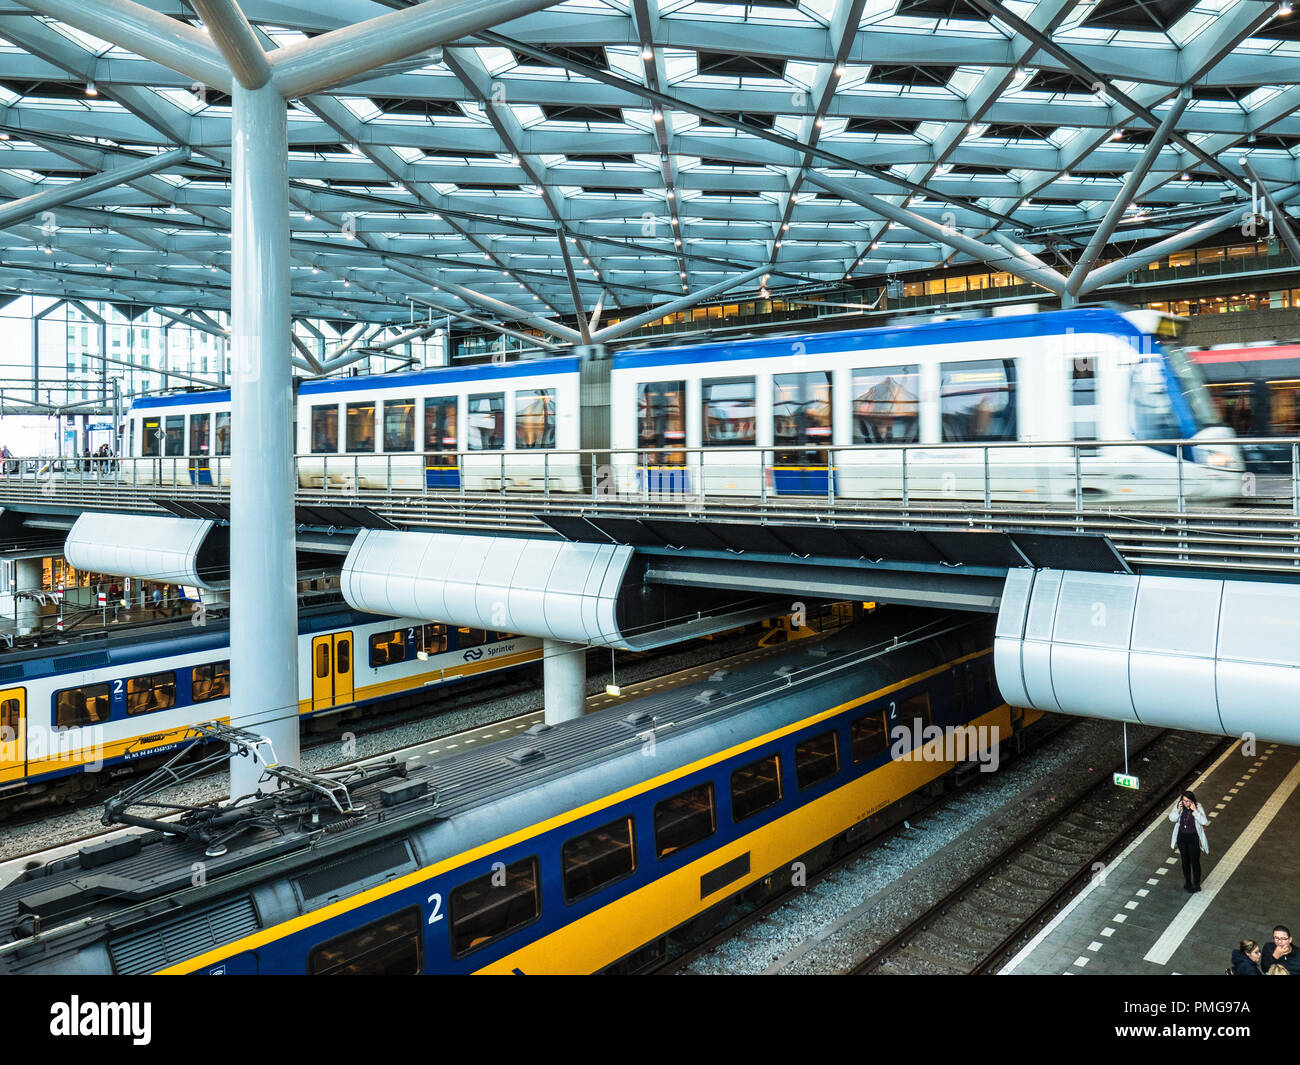 L'Aia Stazione Ferroviaria - multi livello trasporto a Den Haag (L'Aia) stazione ferroviaria, sopra i tram e i treni di seguito Foto Stock